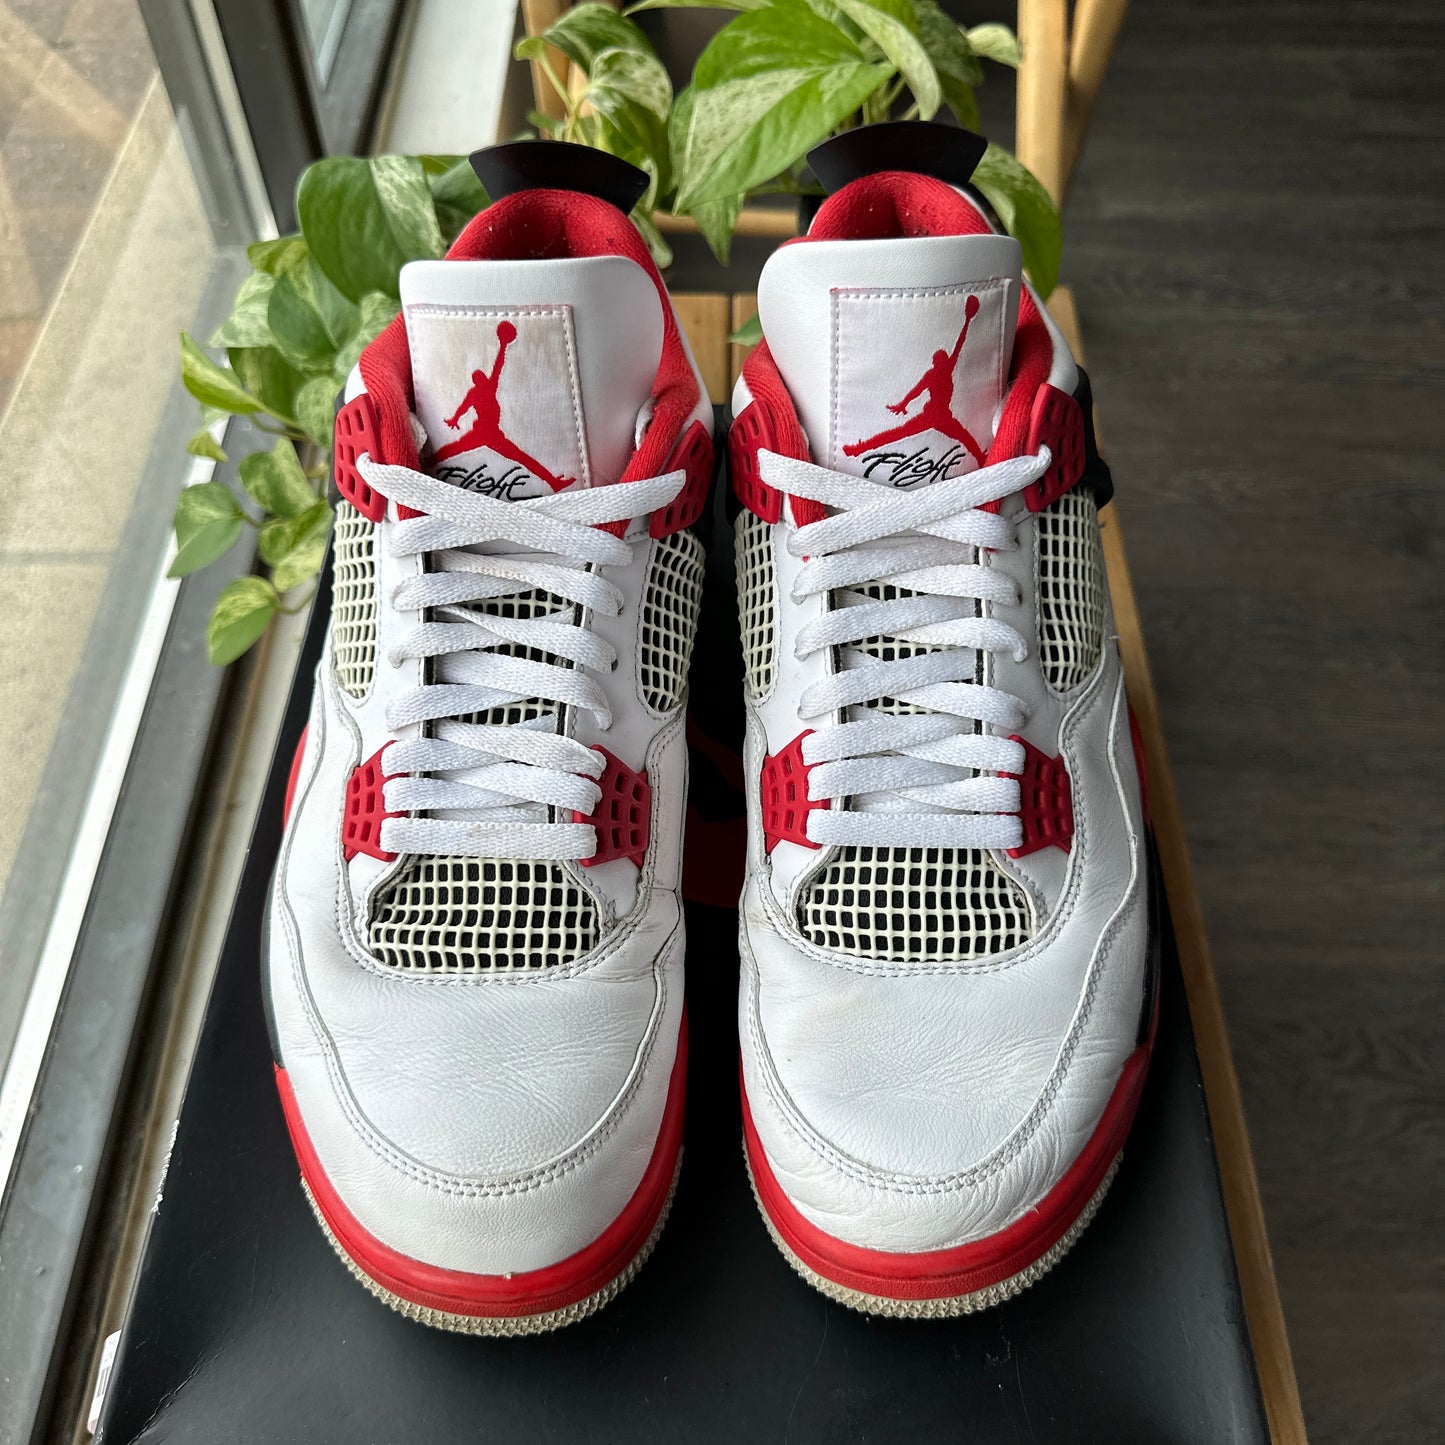 Air Jordan 4 'Fire Red' Size 10.5